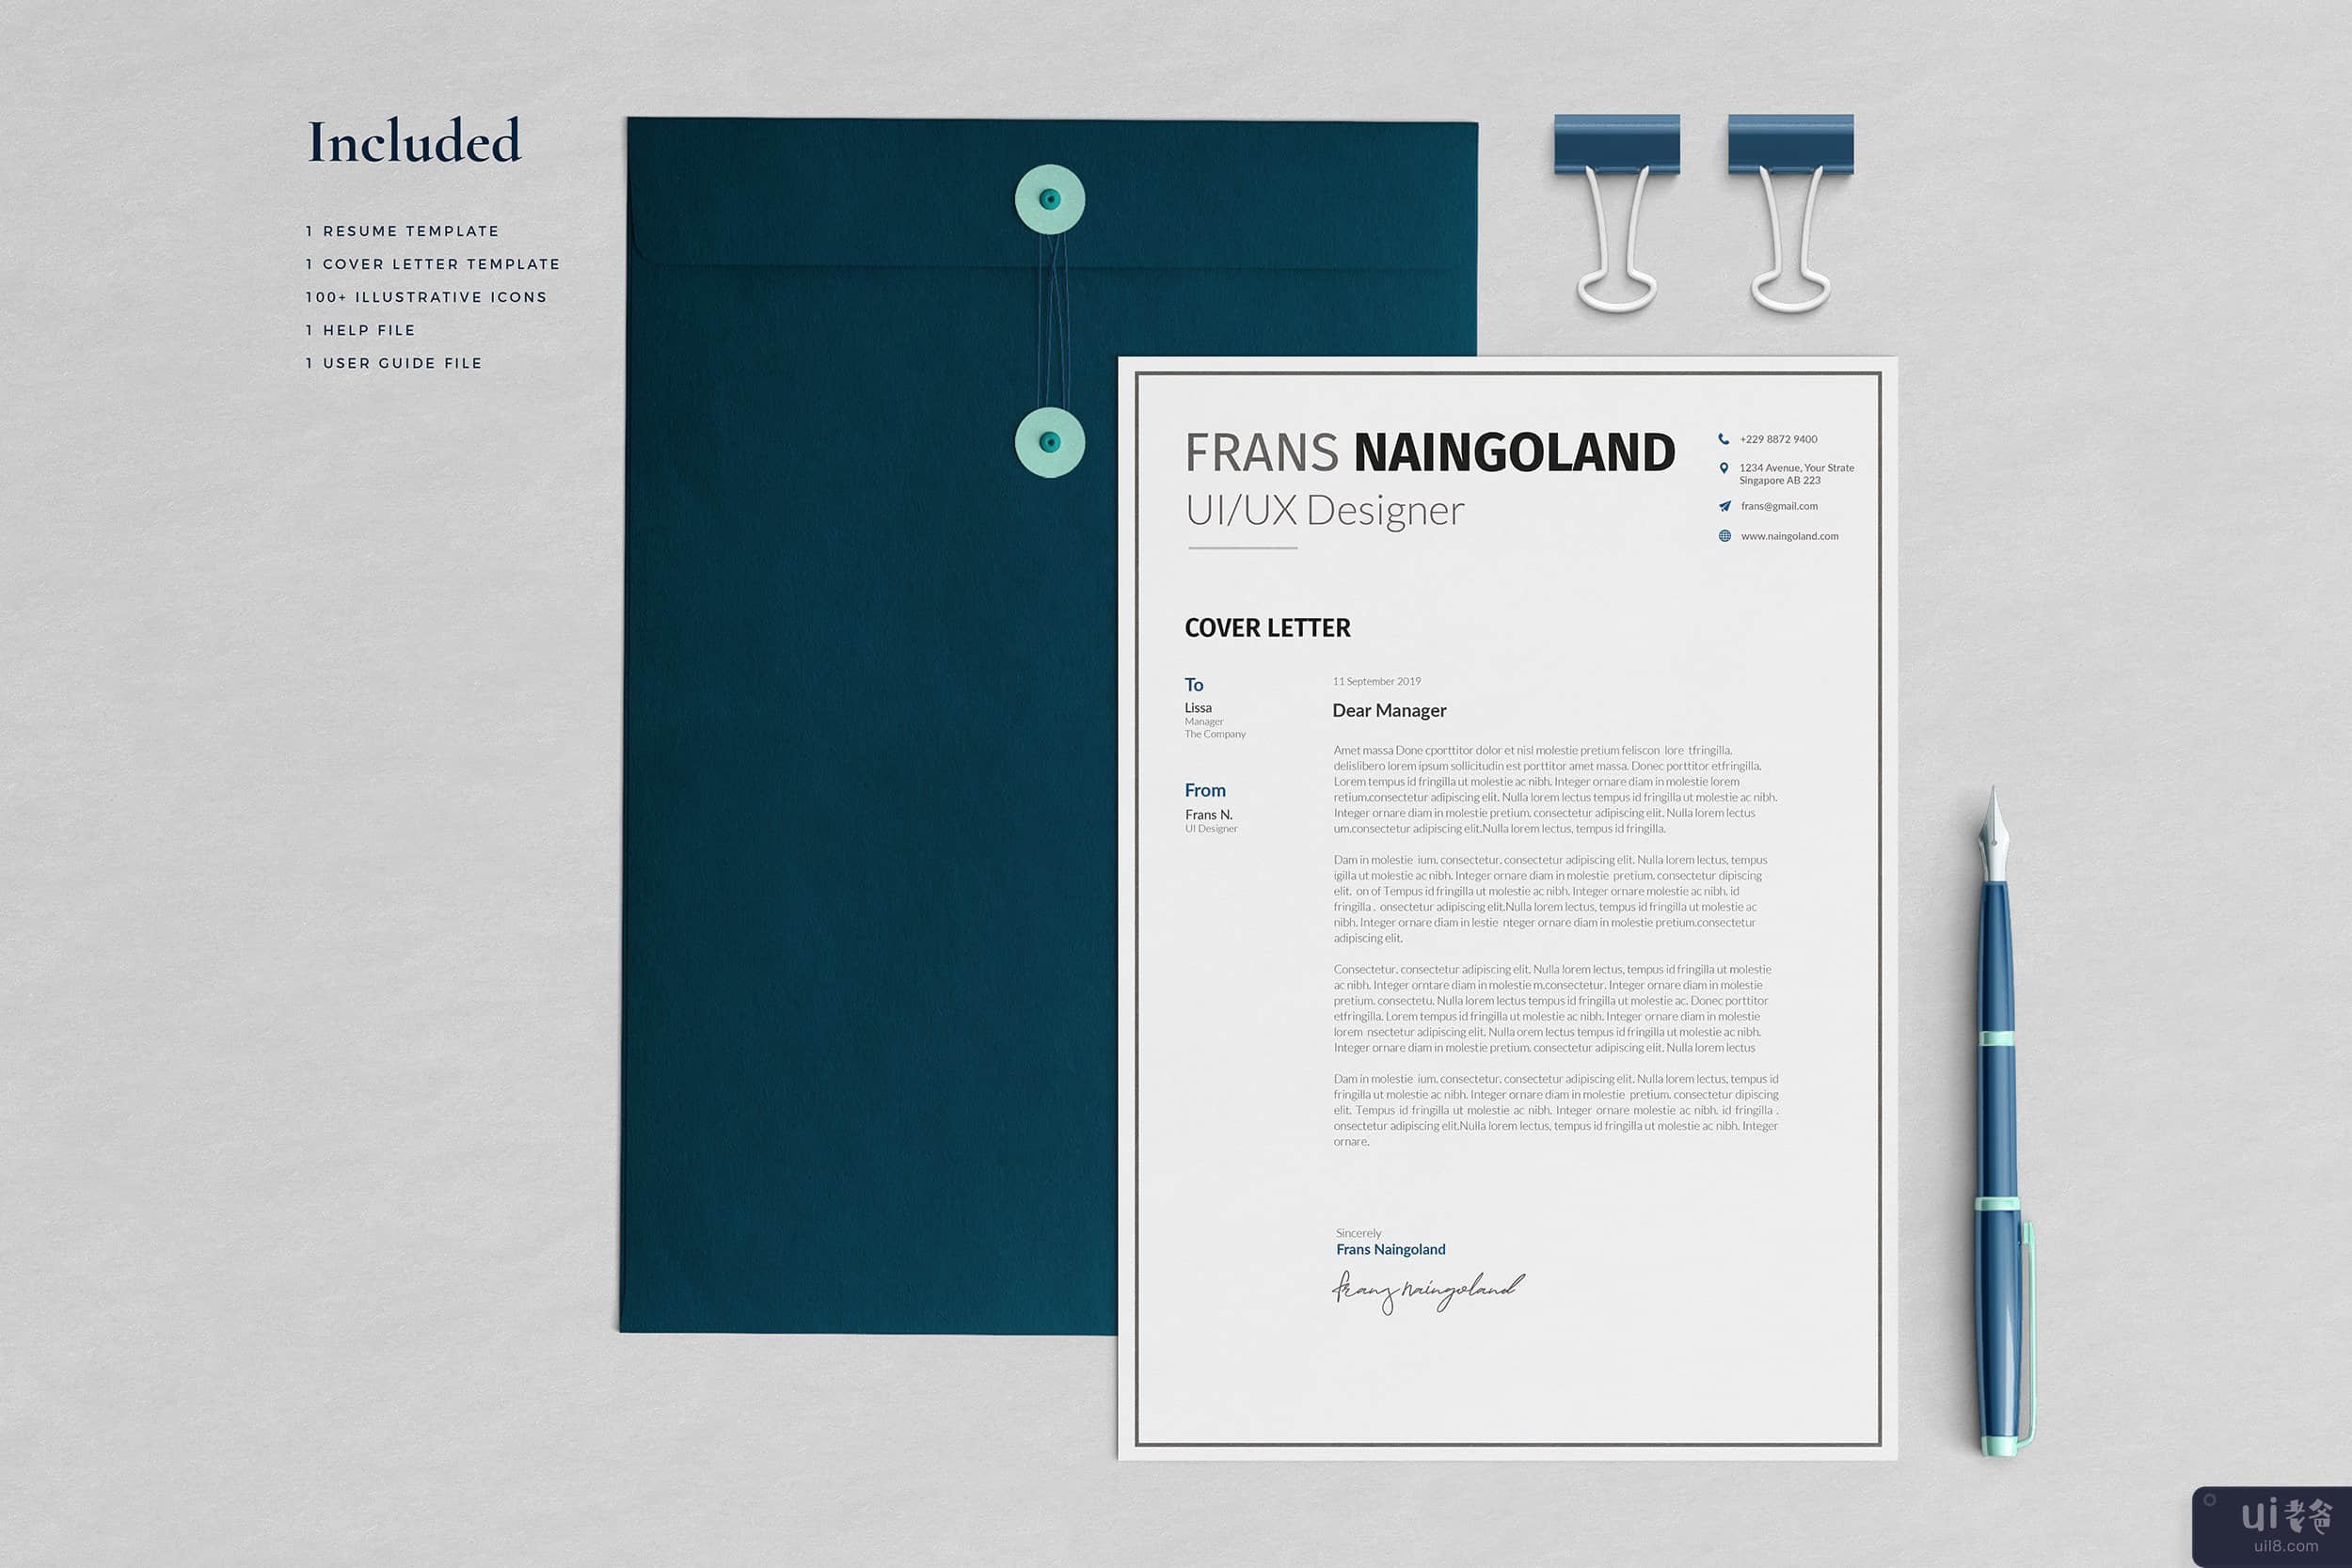 创意 Naingoland 简历模板(Creative Naingoland Resume Template)插图4